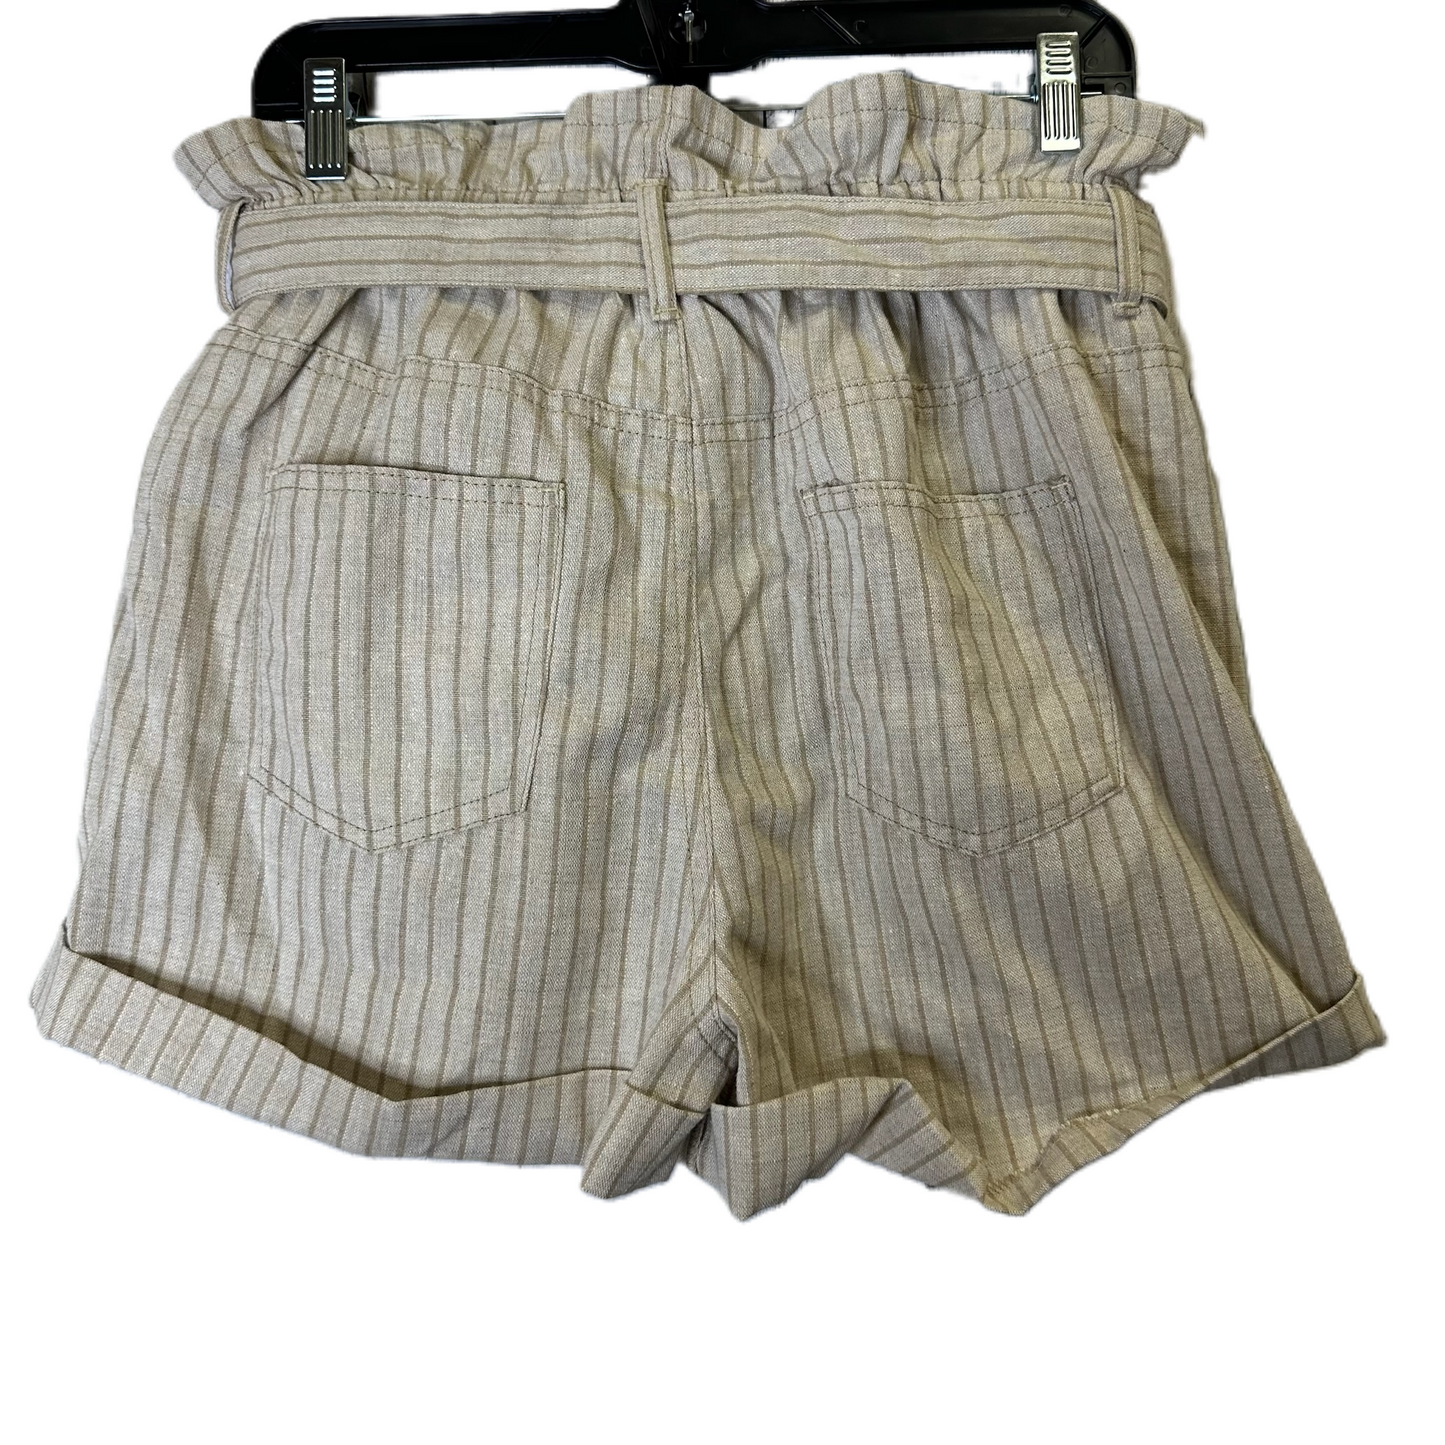 Tan Shorts By Entro, Size: L